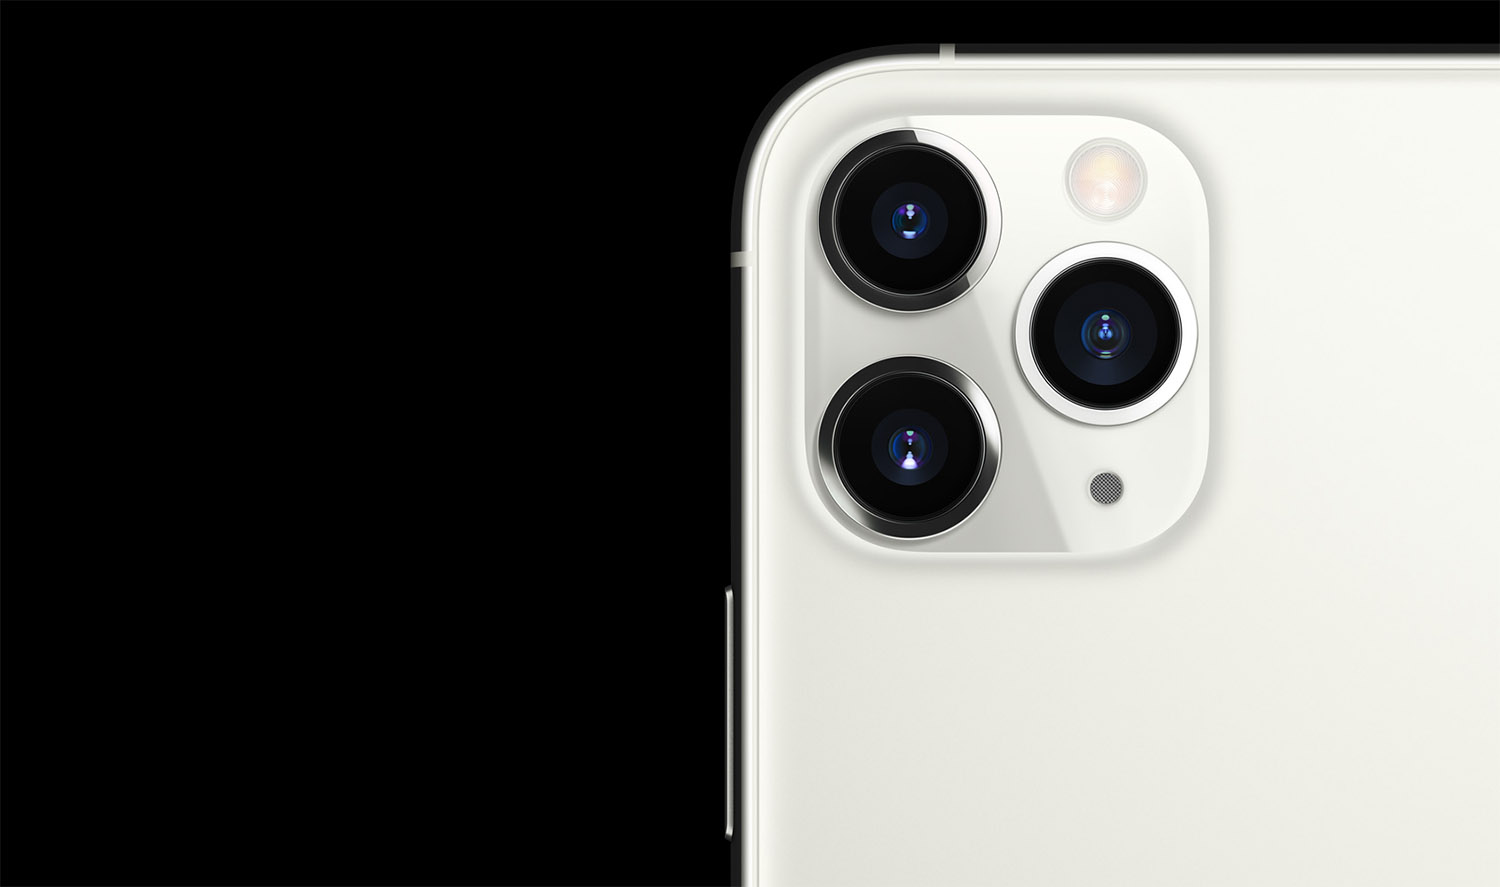 iPhone 14 ar putea fi primul telefon Apple cu suport pentru filmare 8K